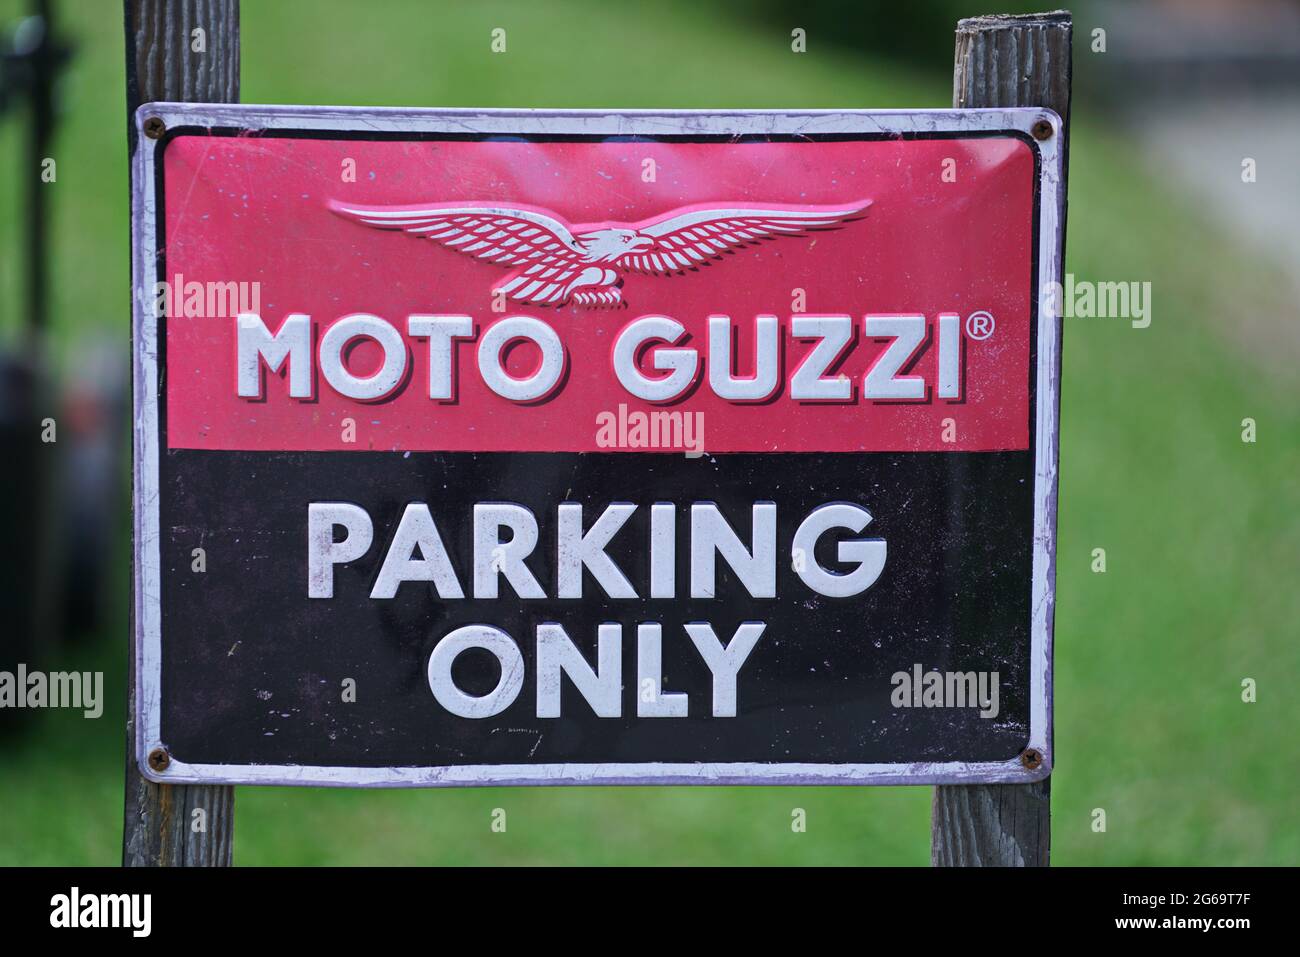 Nahaufnahme des Moto Guzzi Motorrades Schild nur Parken. Mailand, Italien - Juli 2021 Stockfoto